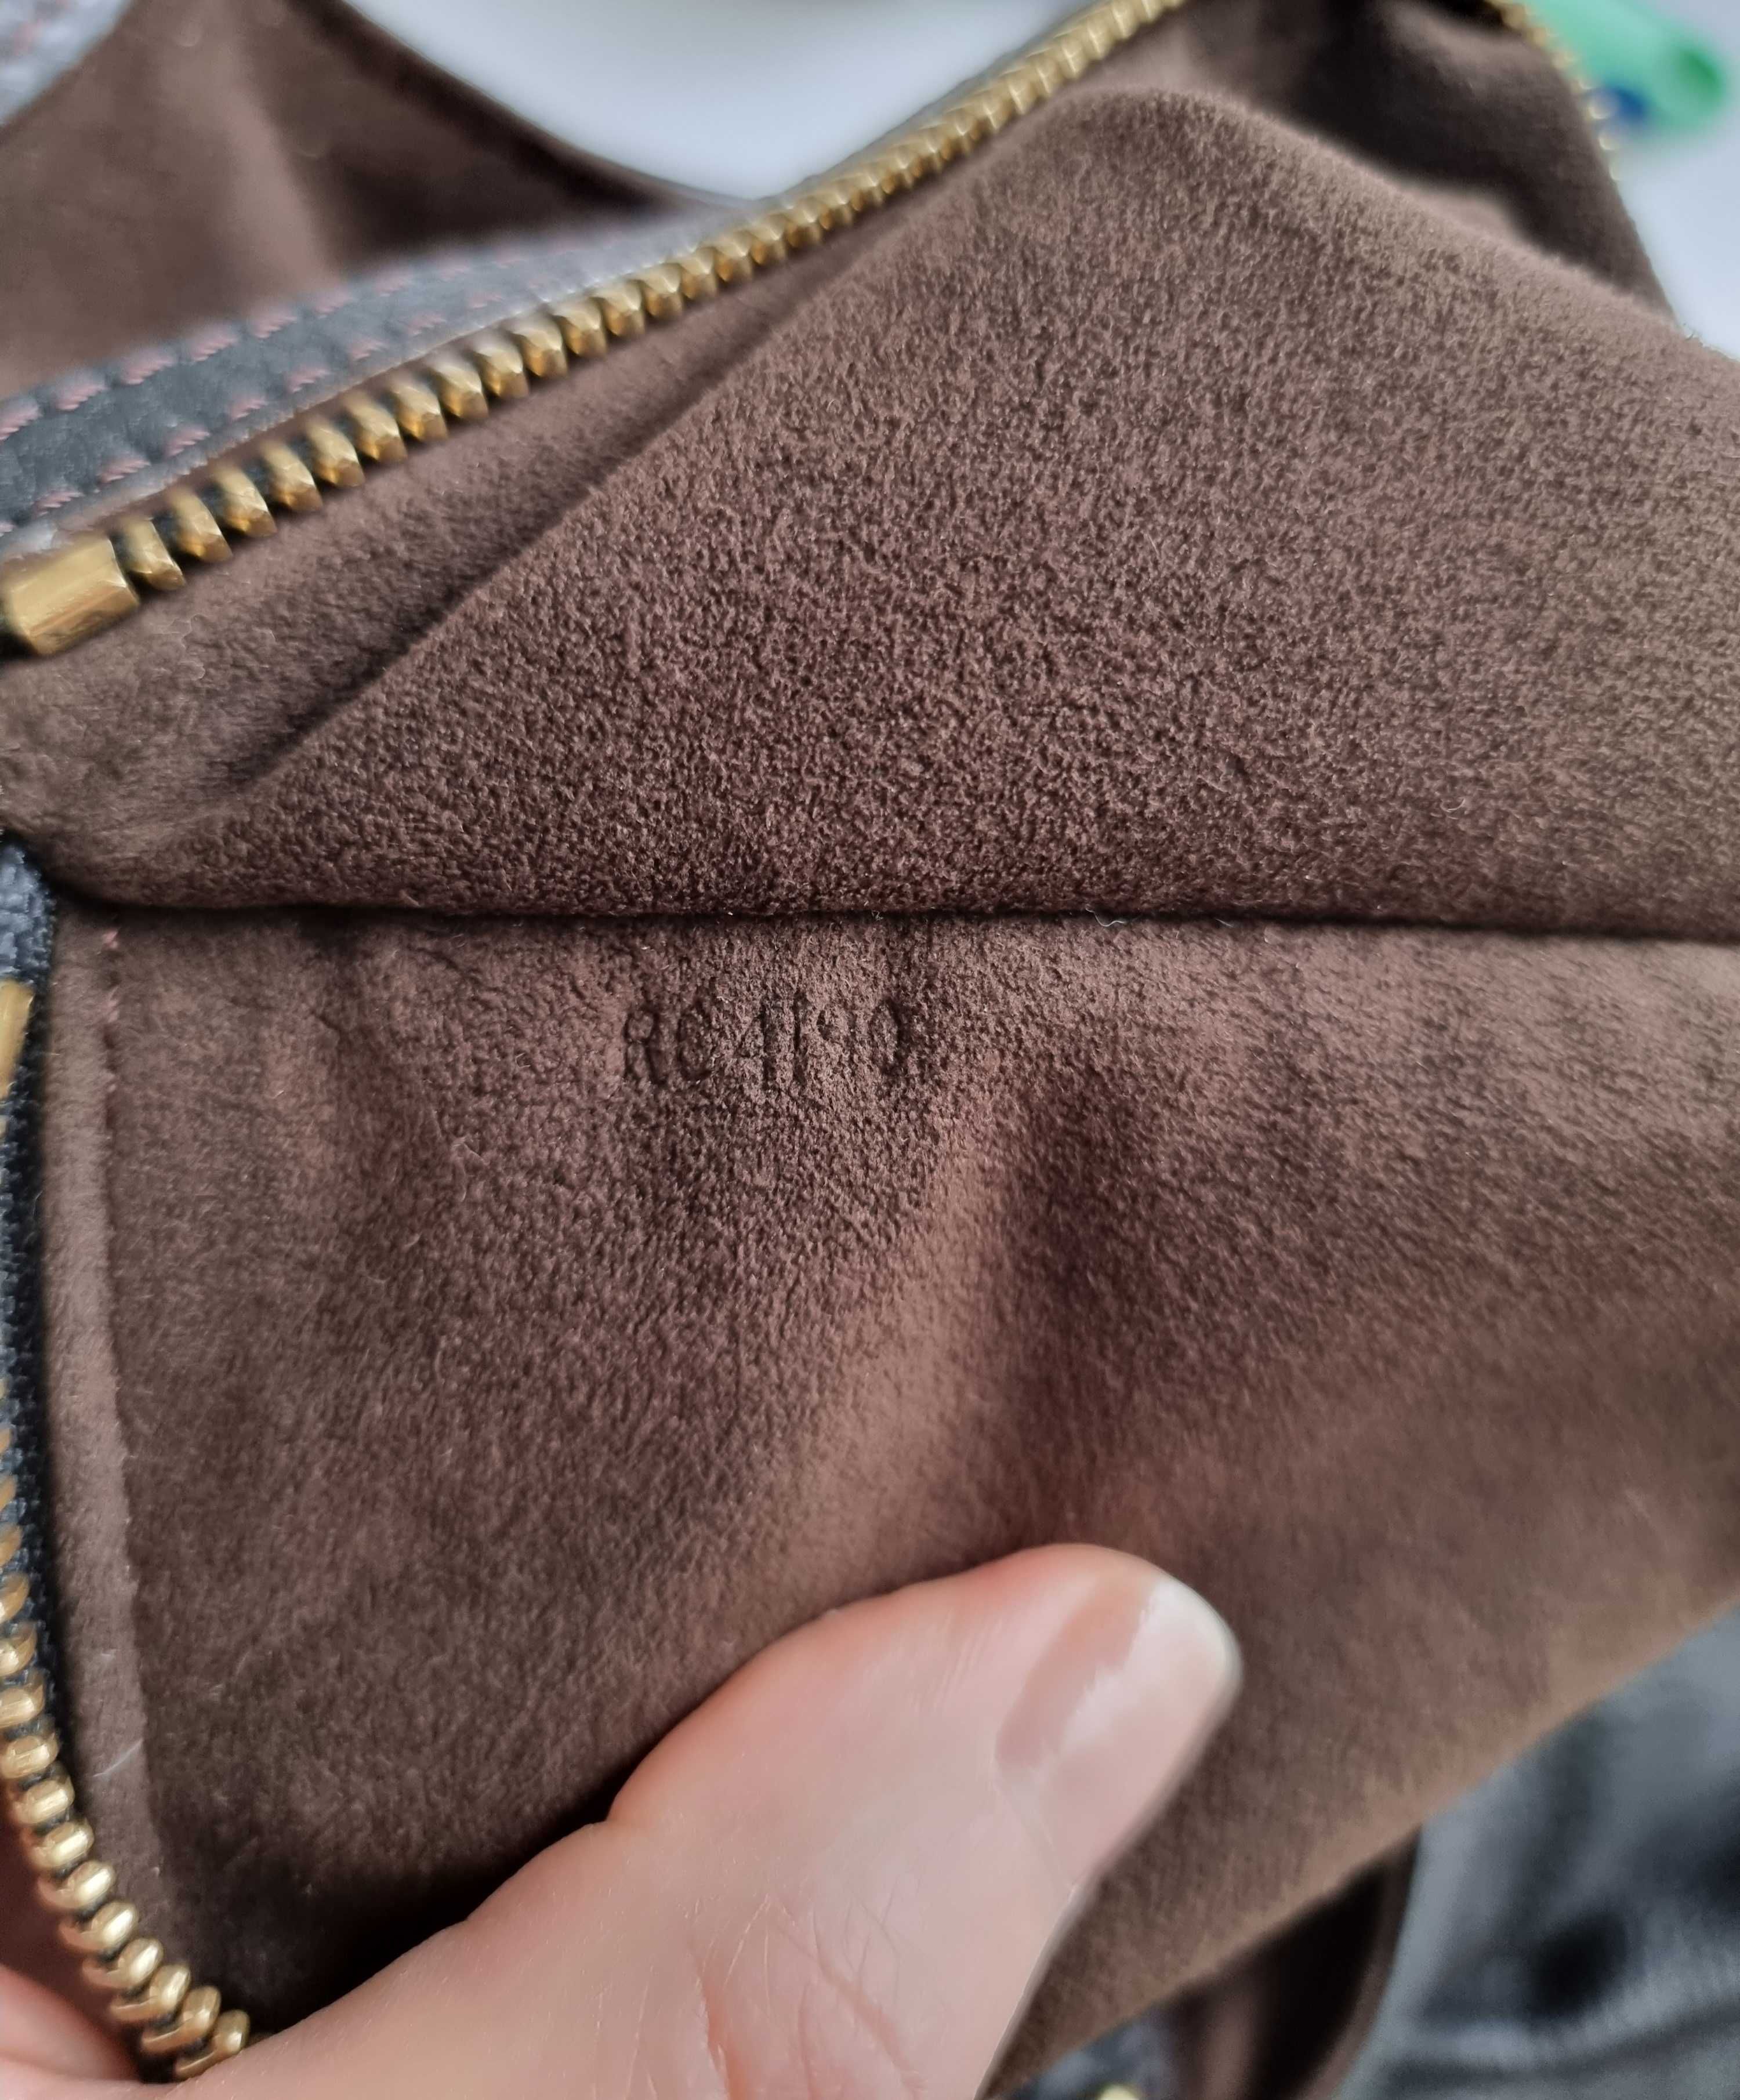 Оригинална чанта Louis Vuitton